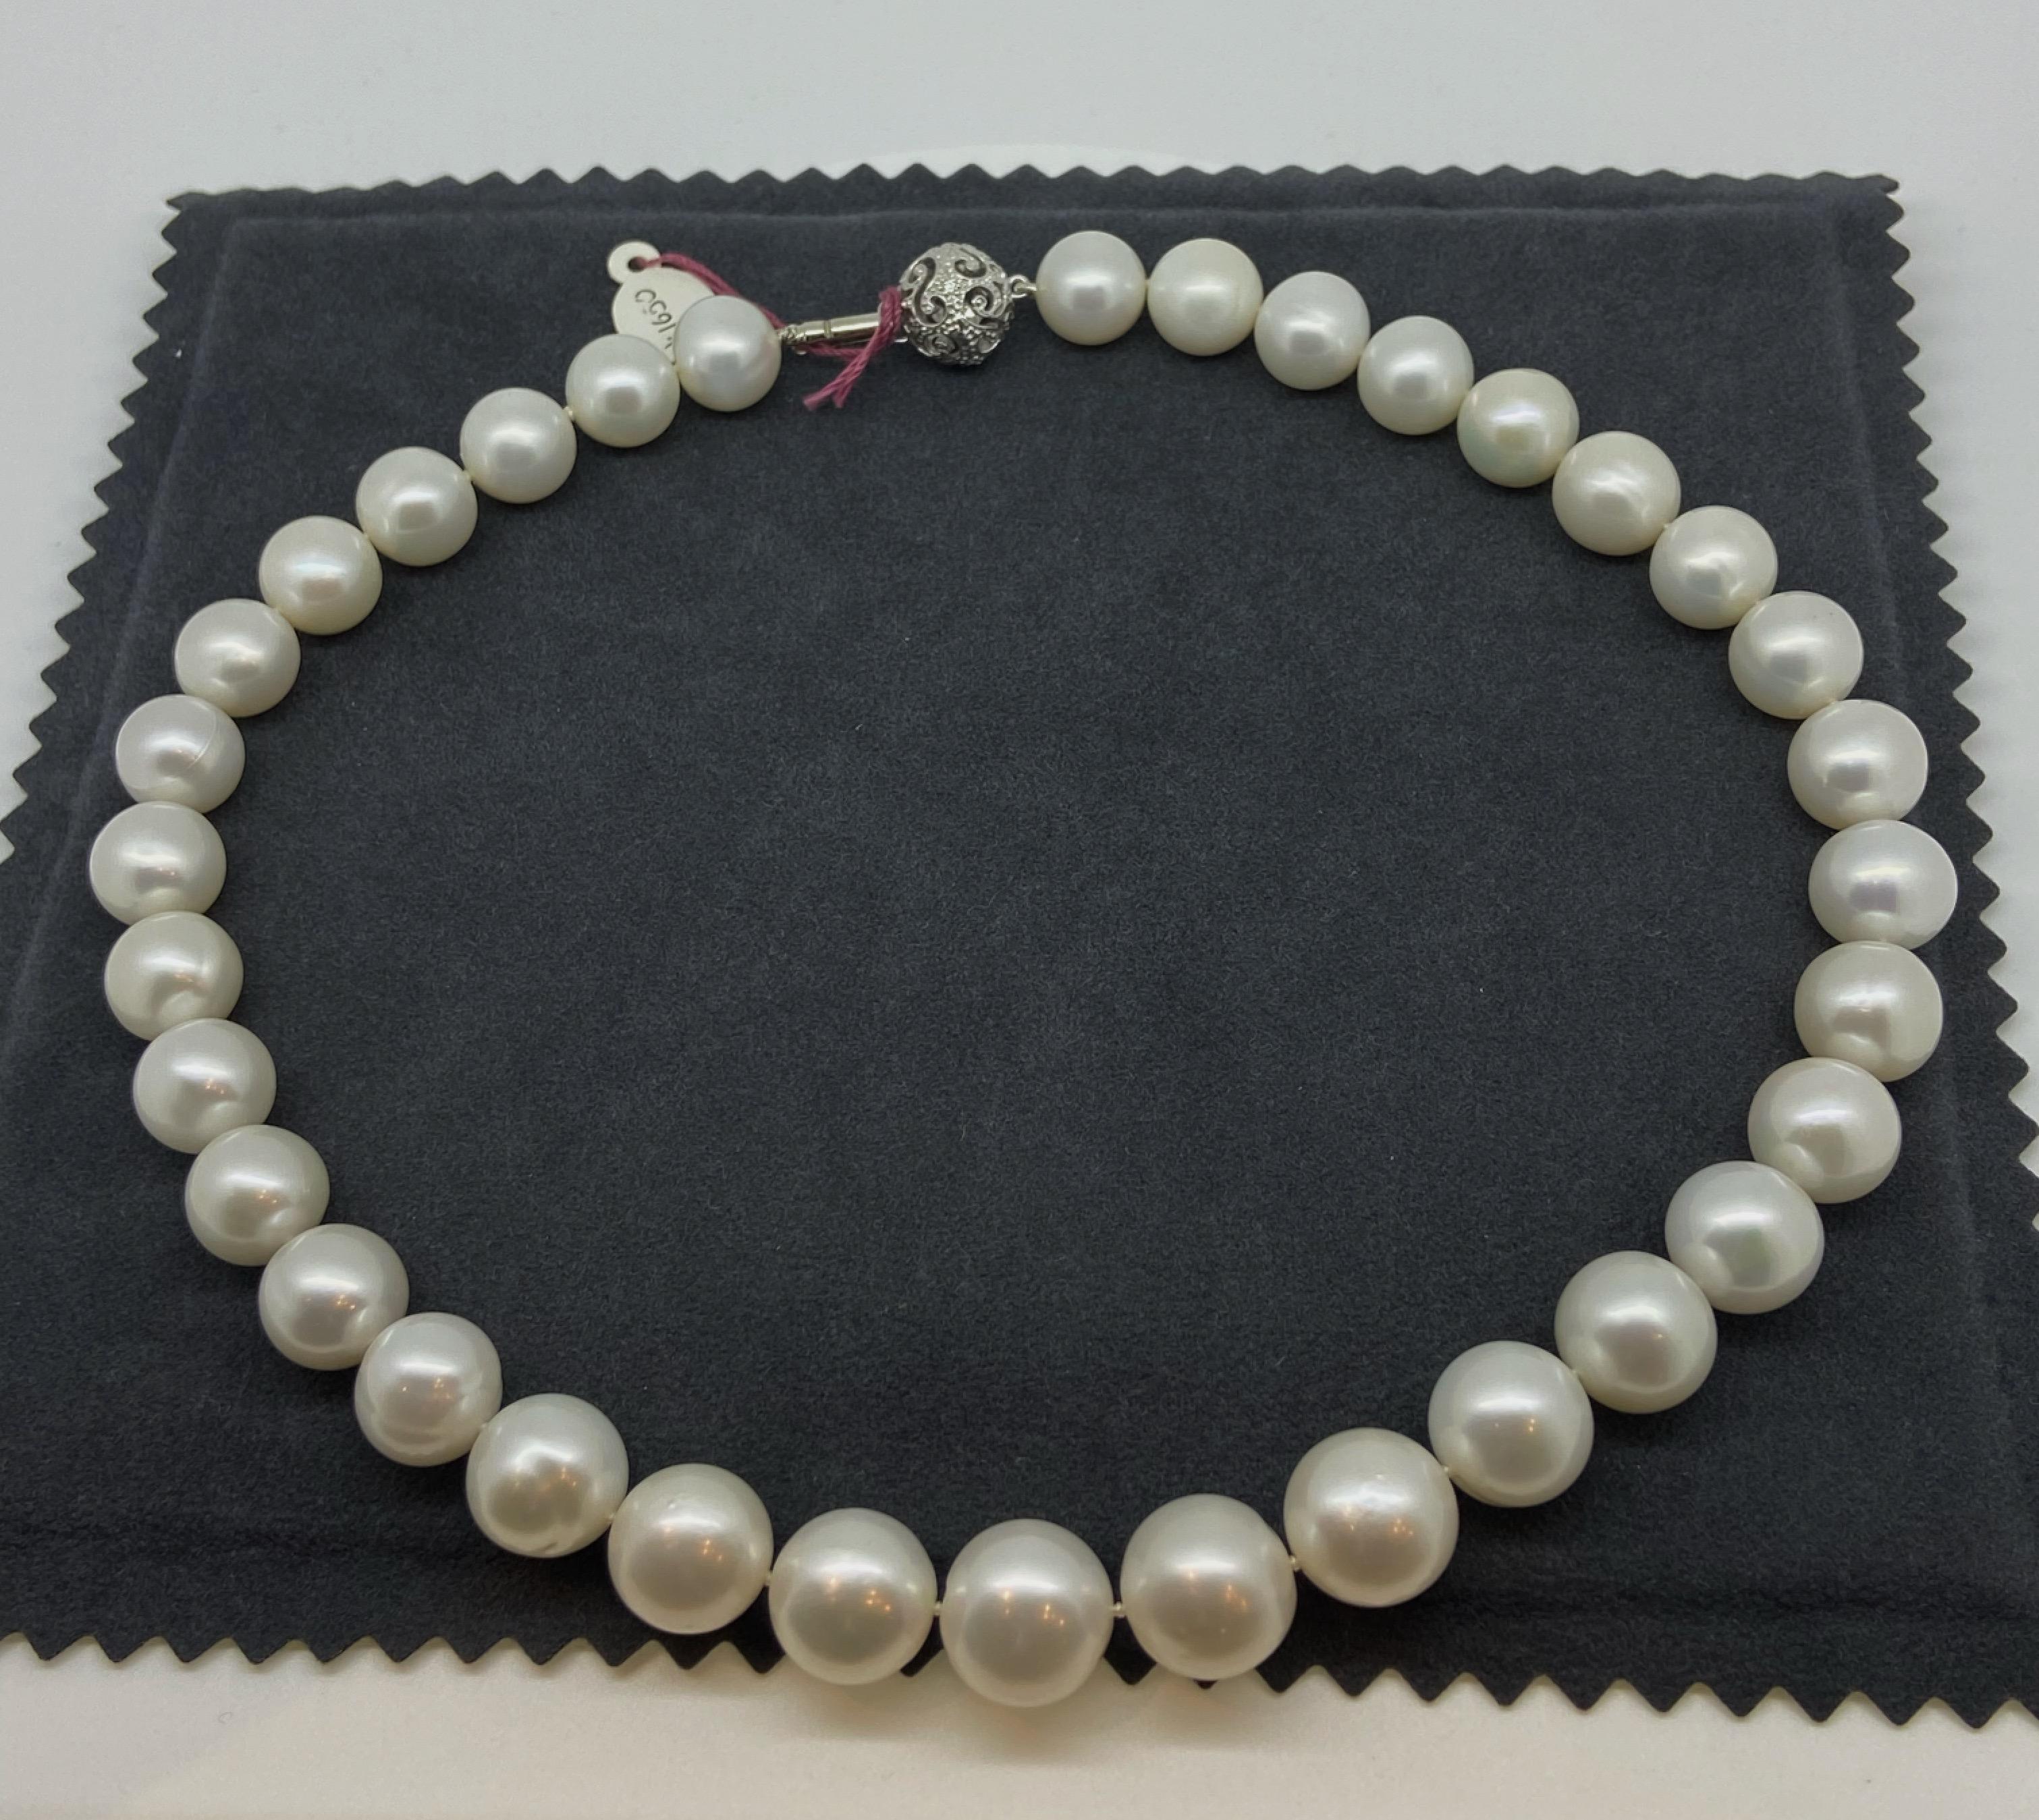 Grand collier de perles de culture de 11 mm à 14 mm. Fermoir en or et diamants. Prix de vente 4850 $ ! Pour femmes en vente